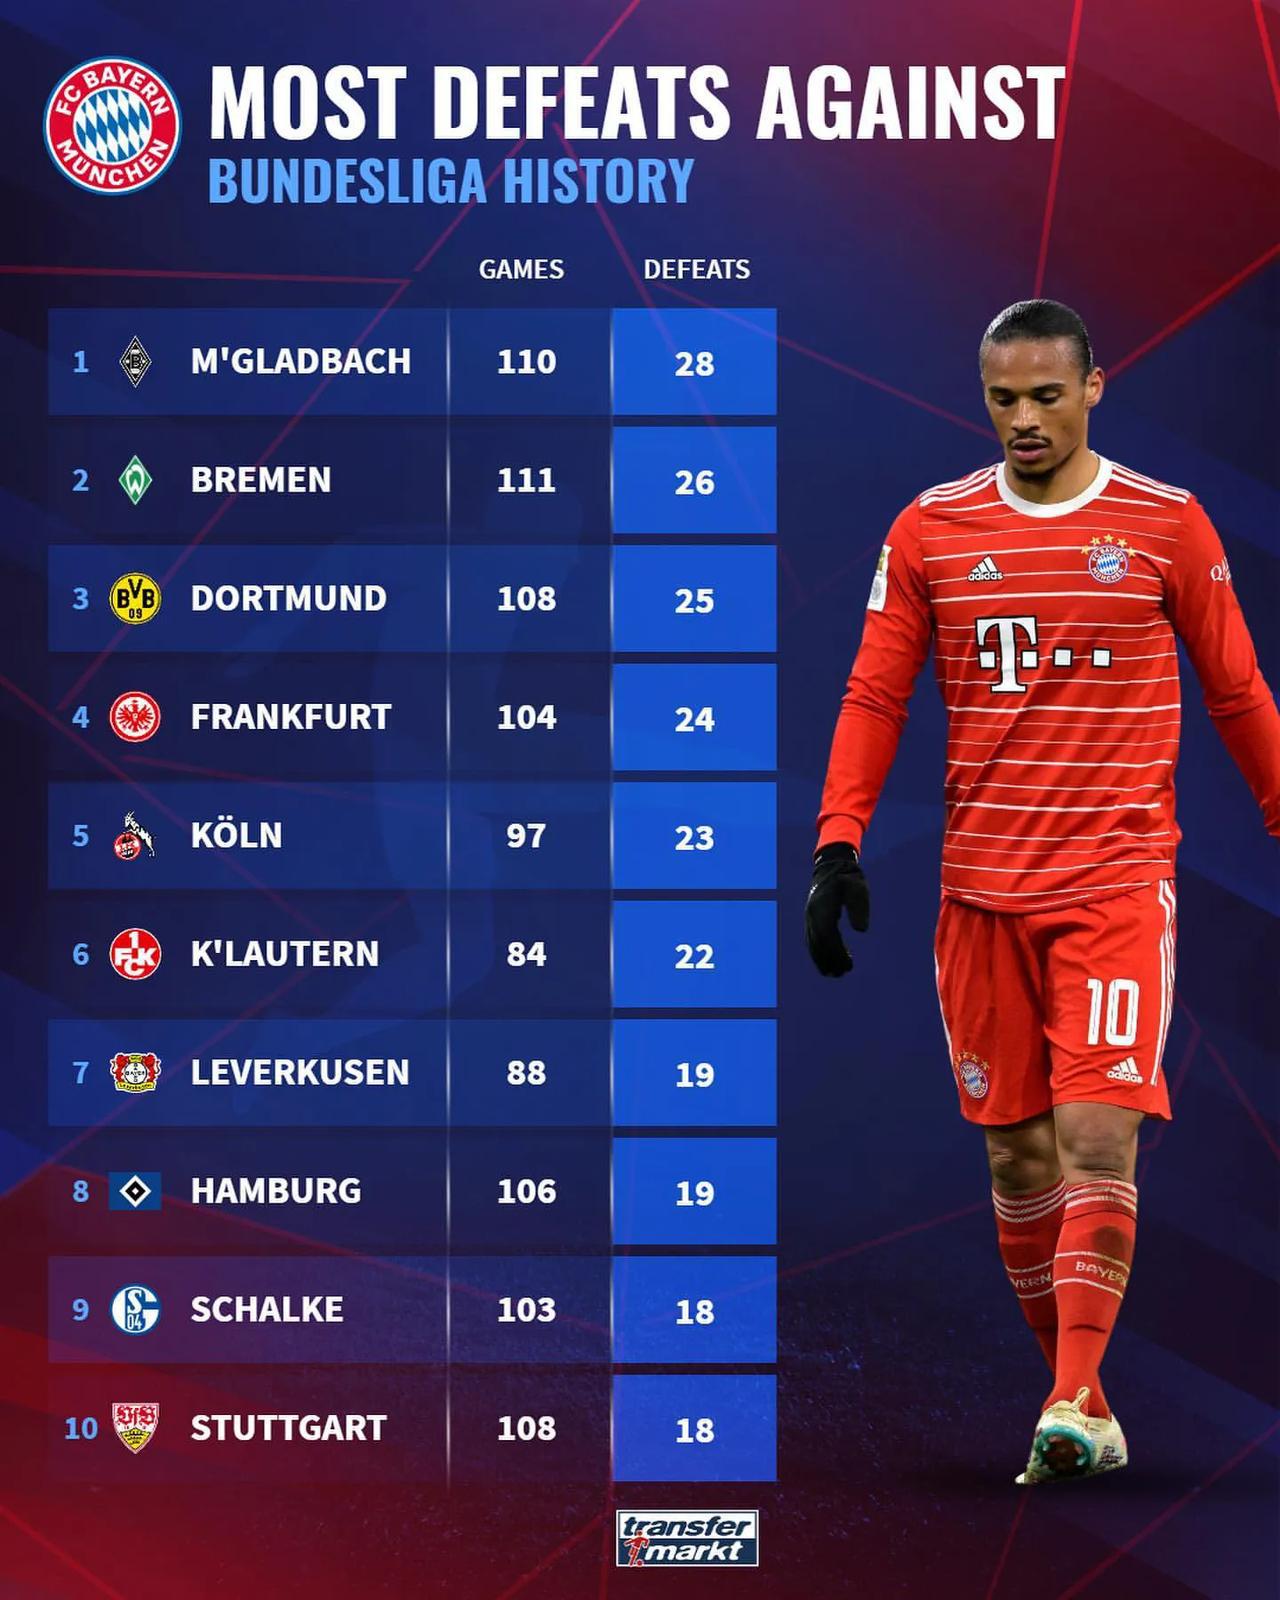 德甲历史拜仁慕尼黑击败次数最多的球队，斯图加特68次、汉堡65次、不来梅59次；(2)